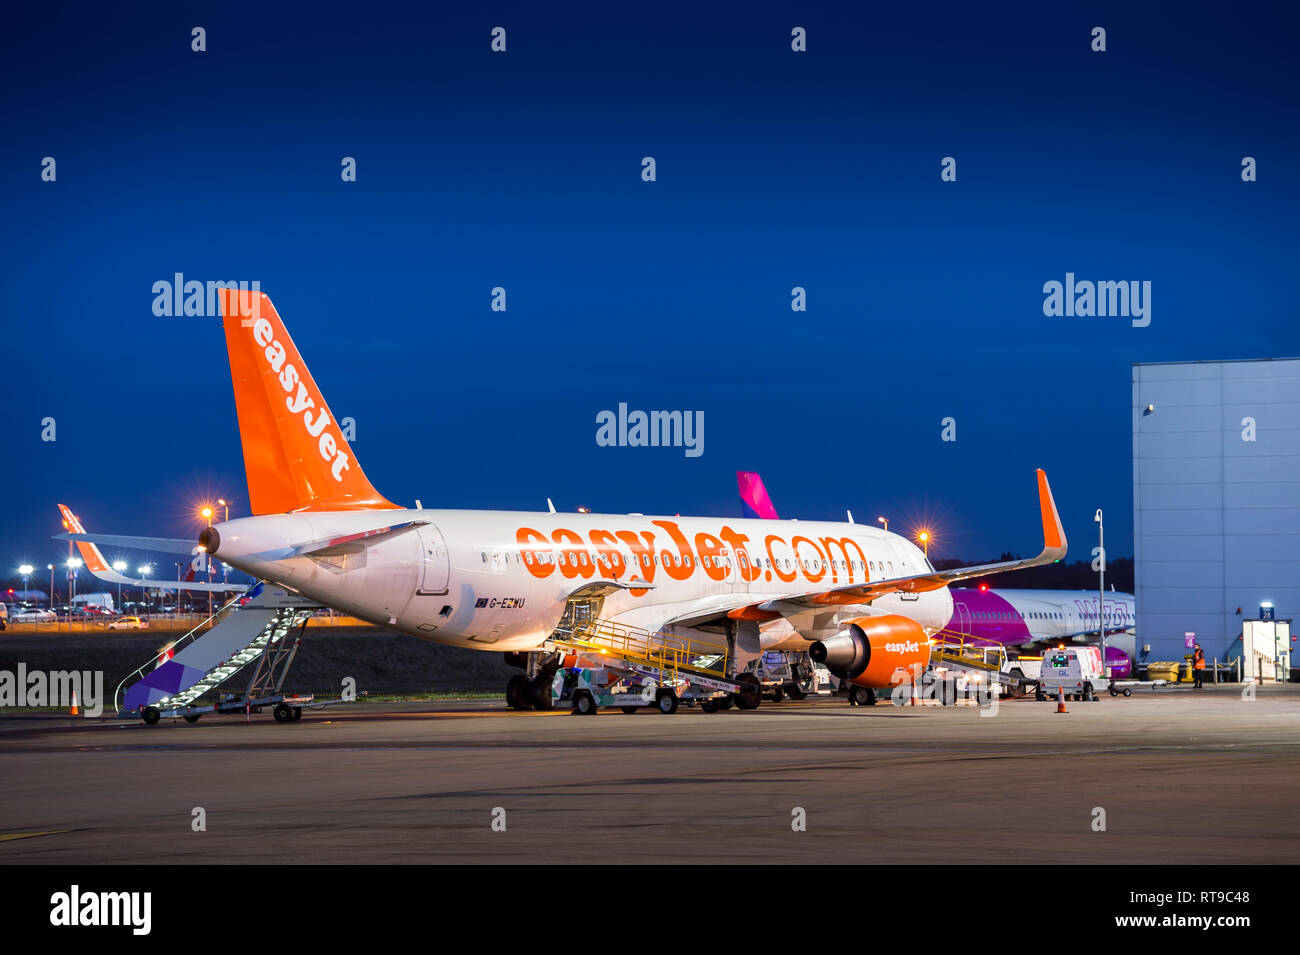 Easyjet aereo in attesa sull'area del piazzale di sosta al crepuscolo e all'aeroporto di Luton, Inghilterra. Foto Stock